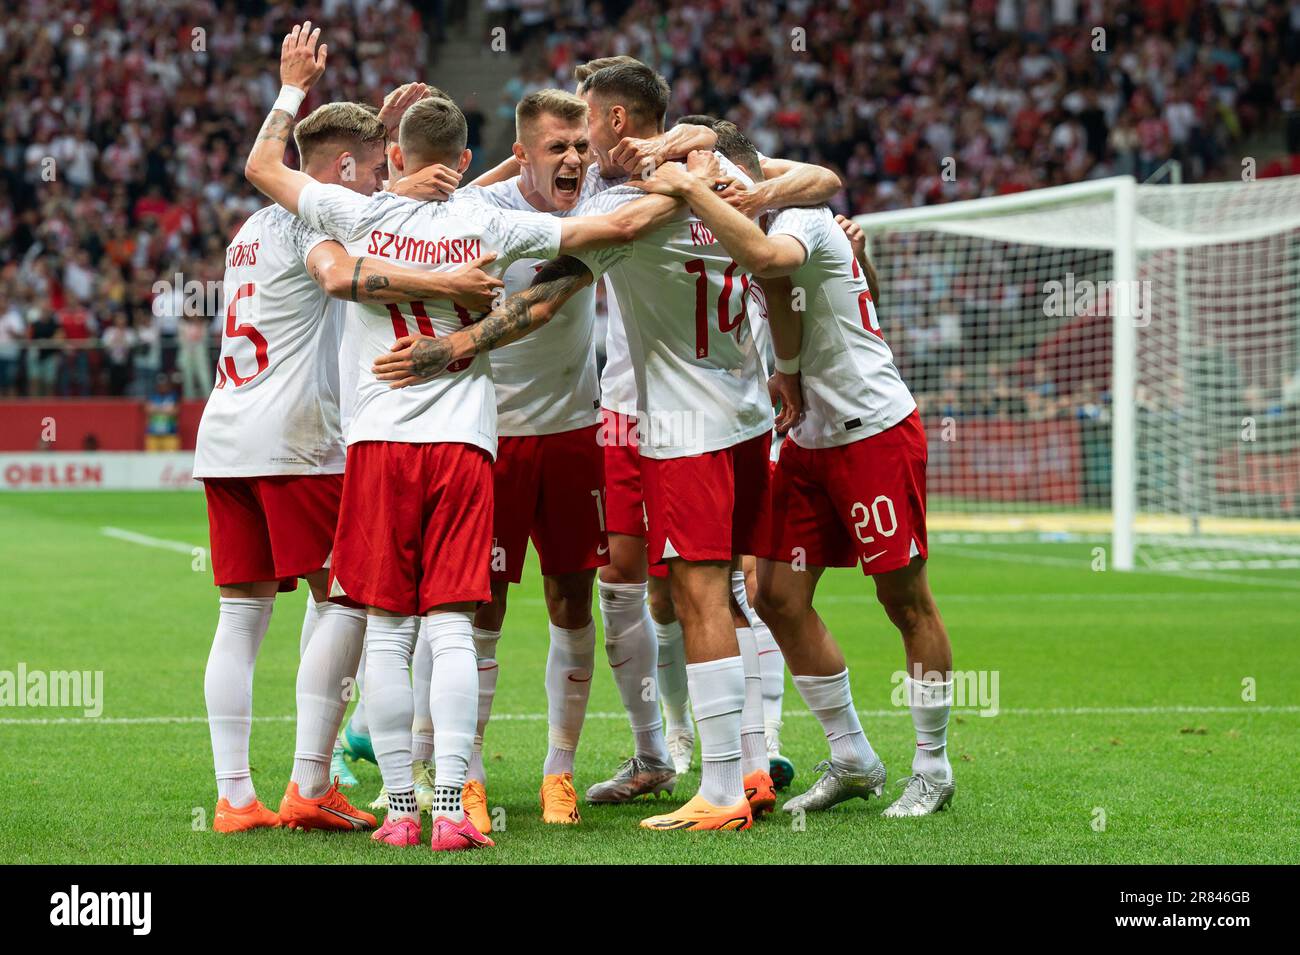 VARSOVIE, POLOGNE - 16 JUIN 2023: Match de football amical Pologne contre Allemagne 1:0. L'équipe de Pologne se réjouisse après avoir marqué son objectif. Banque D'Images